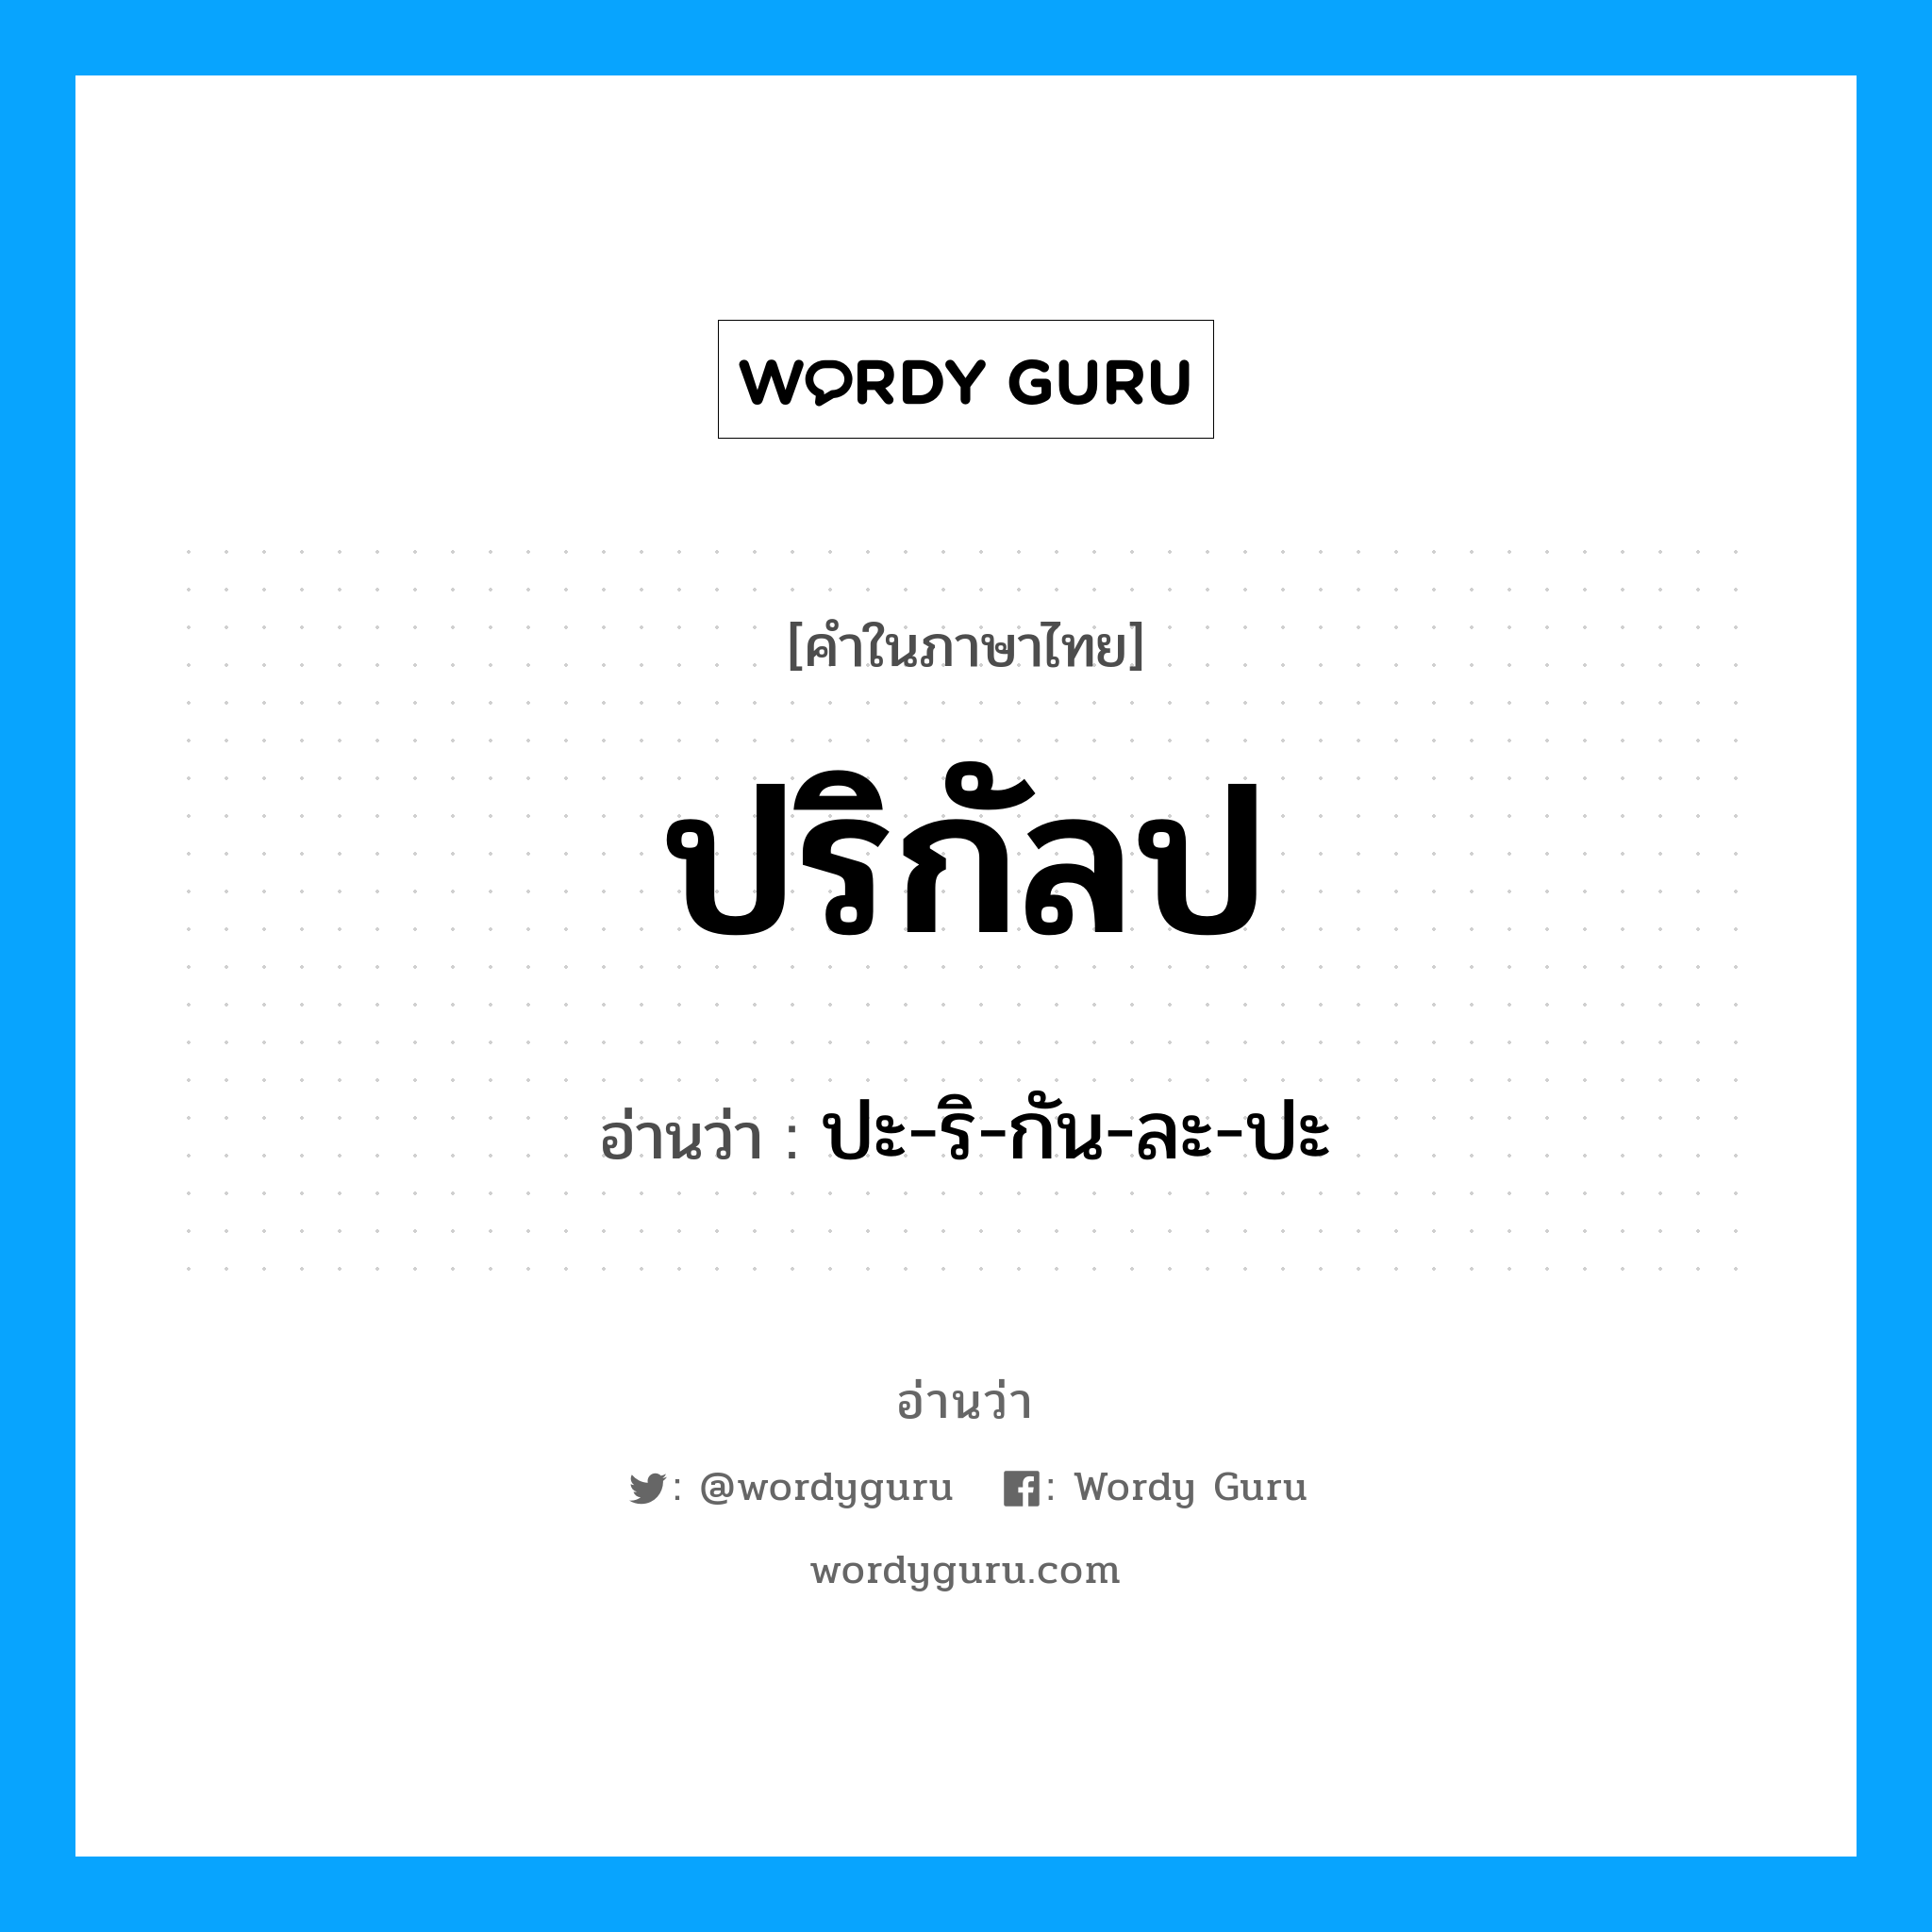 ปะ-ริ-กัน-ละ-ปะ เป็นคำอ่านของคำไหน?, คำในภาษาไทย ปะ-ริ-กัน-ละ-ปะ อ่านว่า ปริกัลป